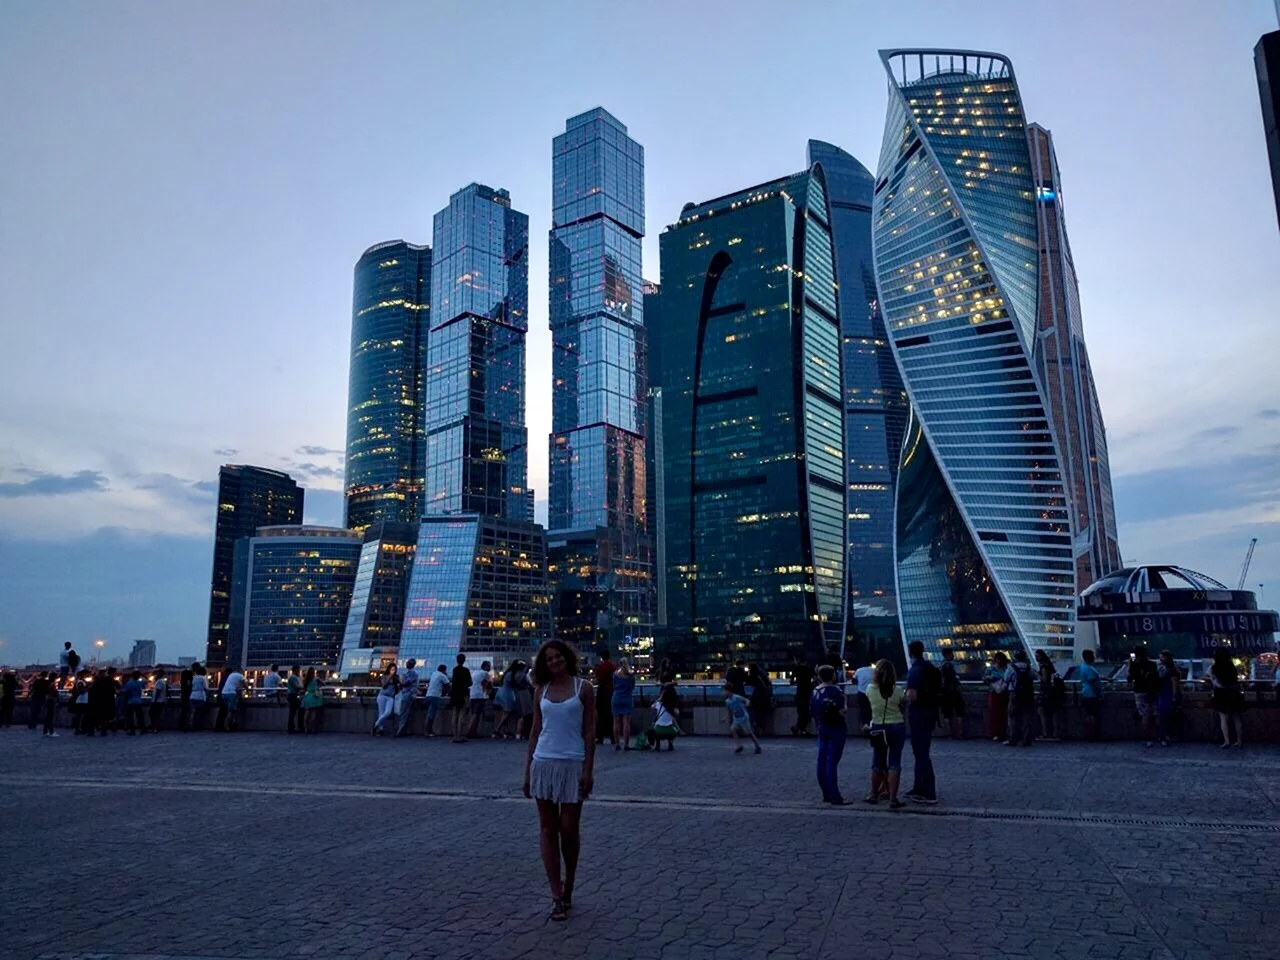 Москва Сити